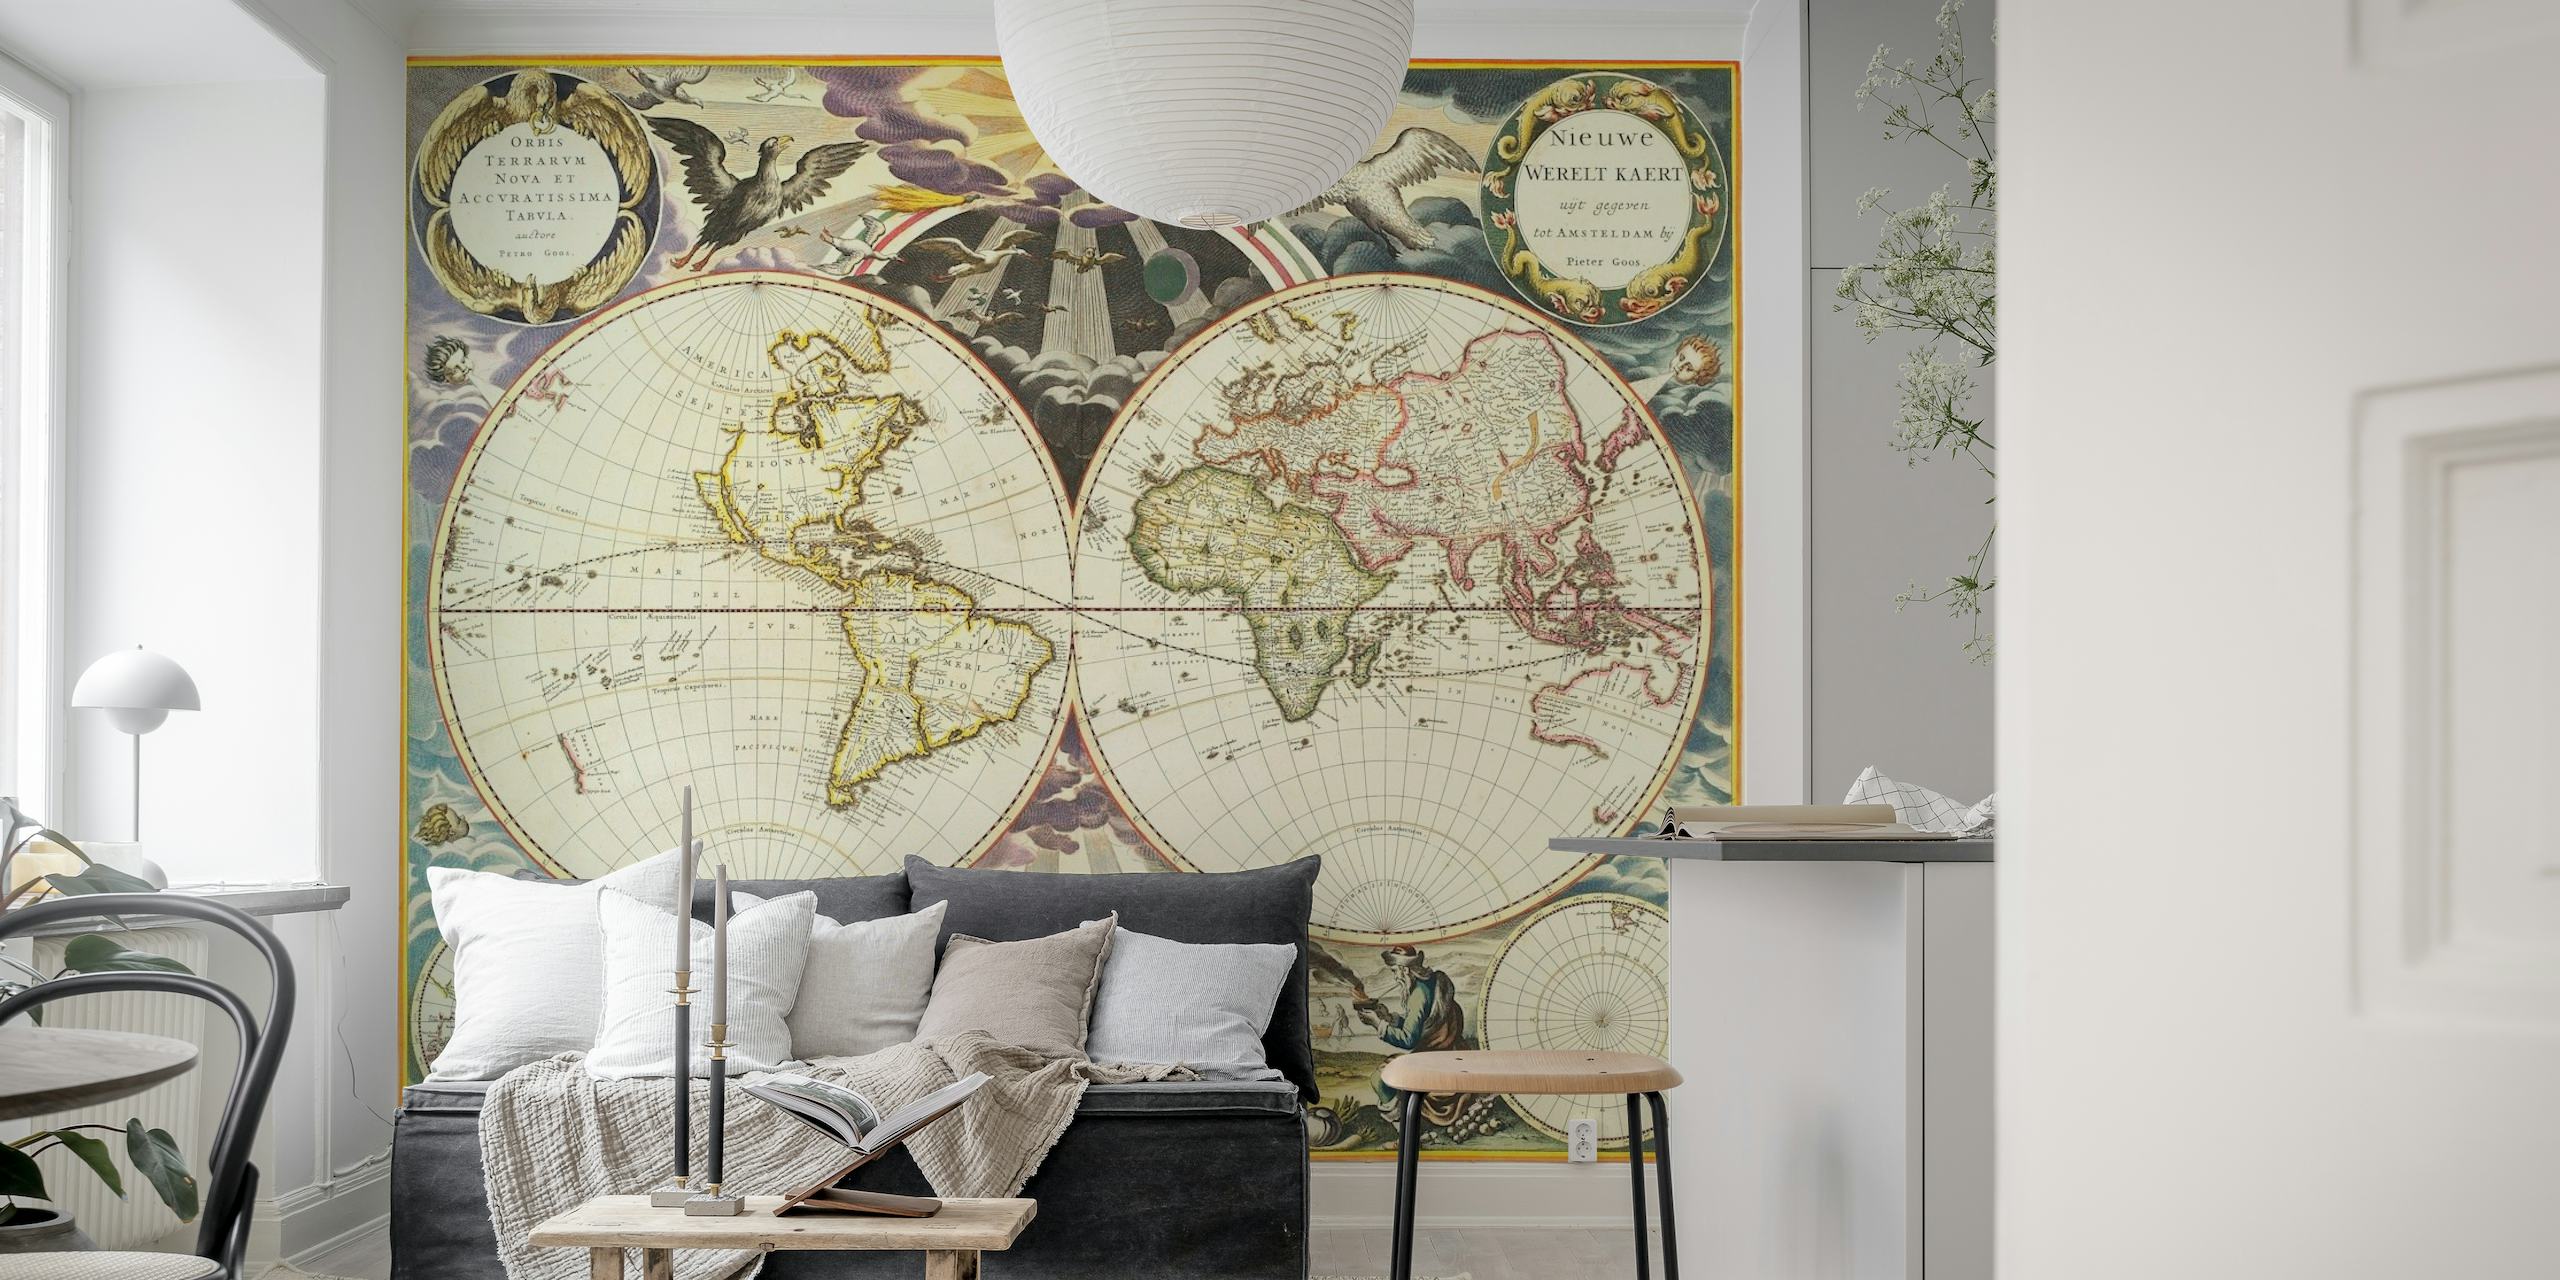 Antieke wereldkaart muurschildering met vintage dubbel halfrond ontwerp en decoratieve elementen